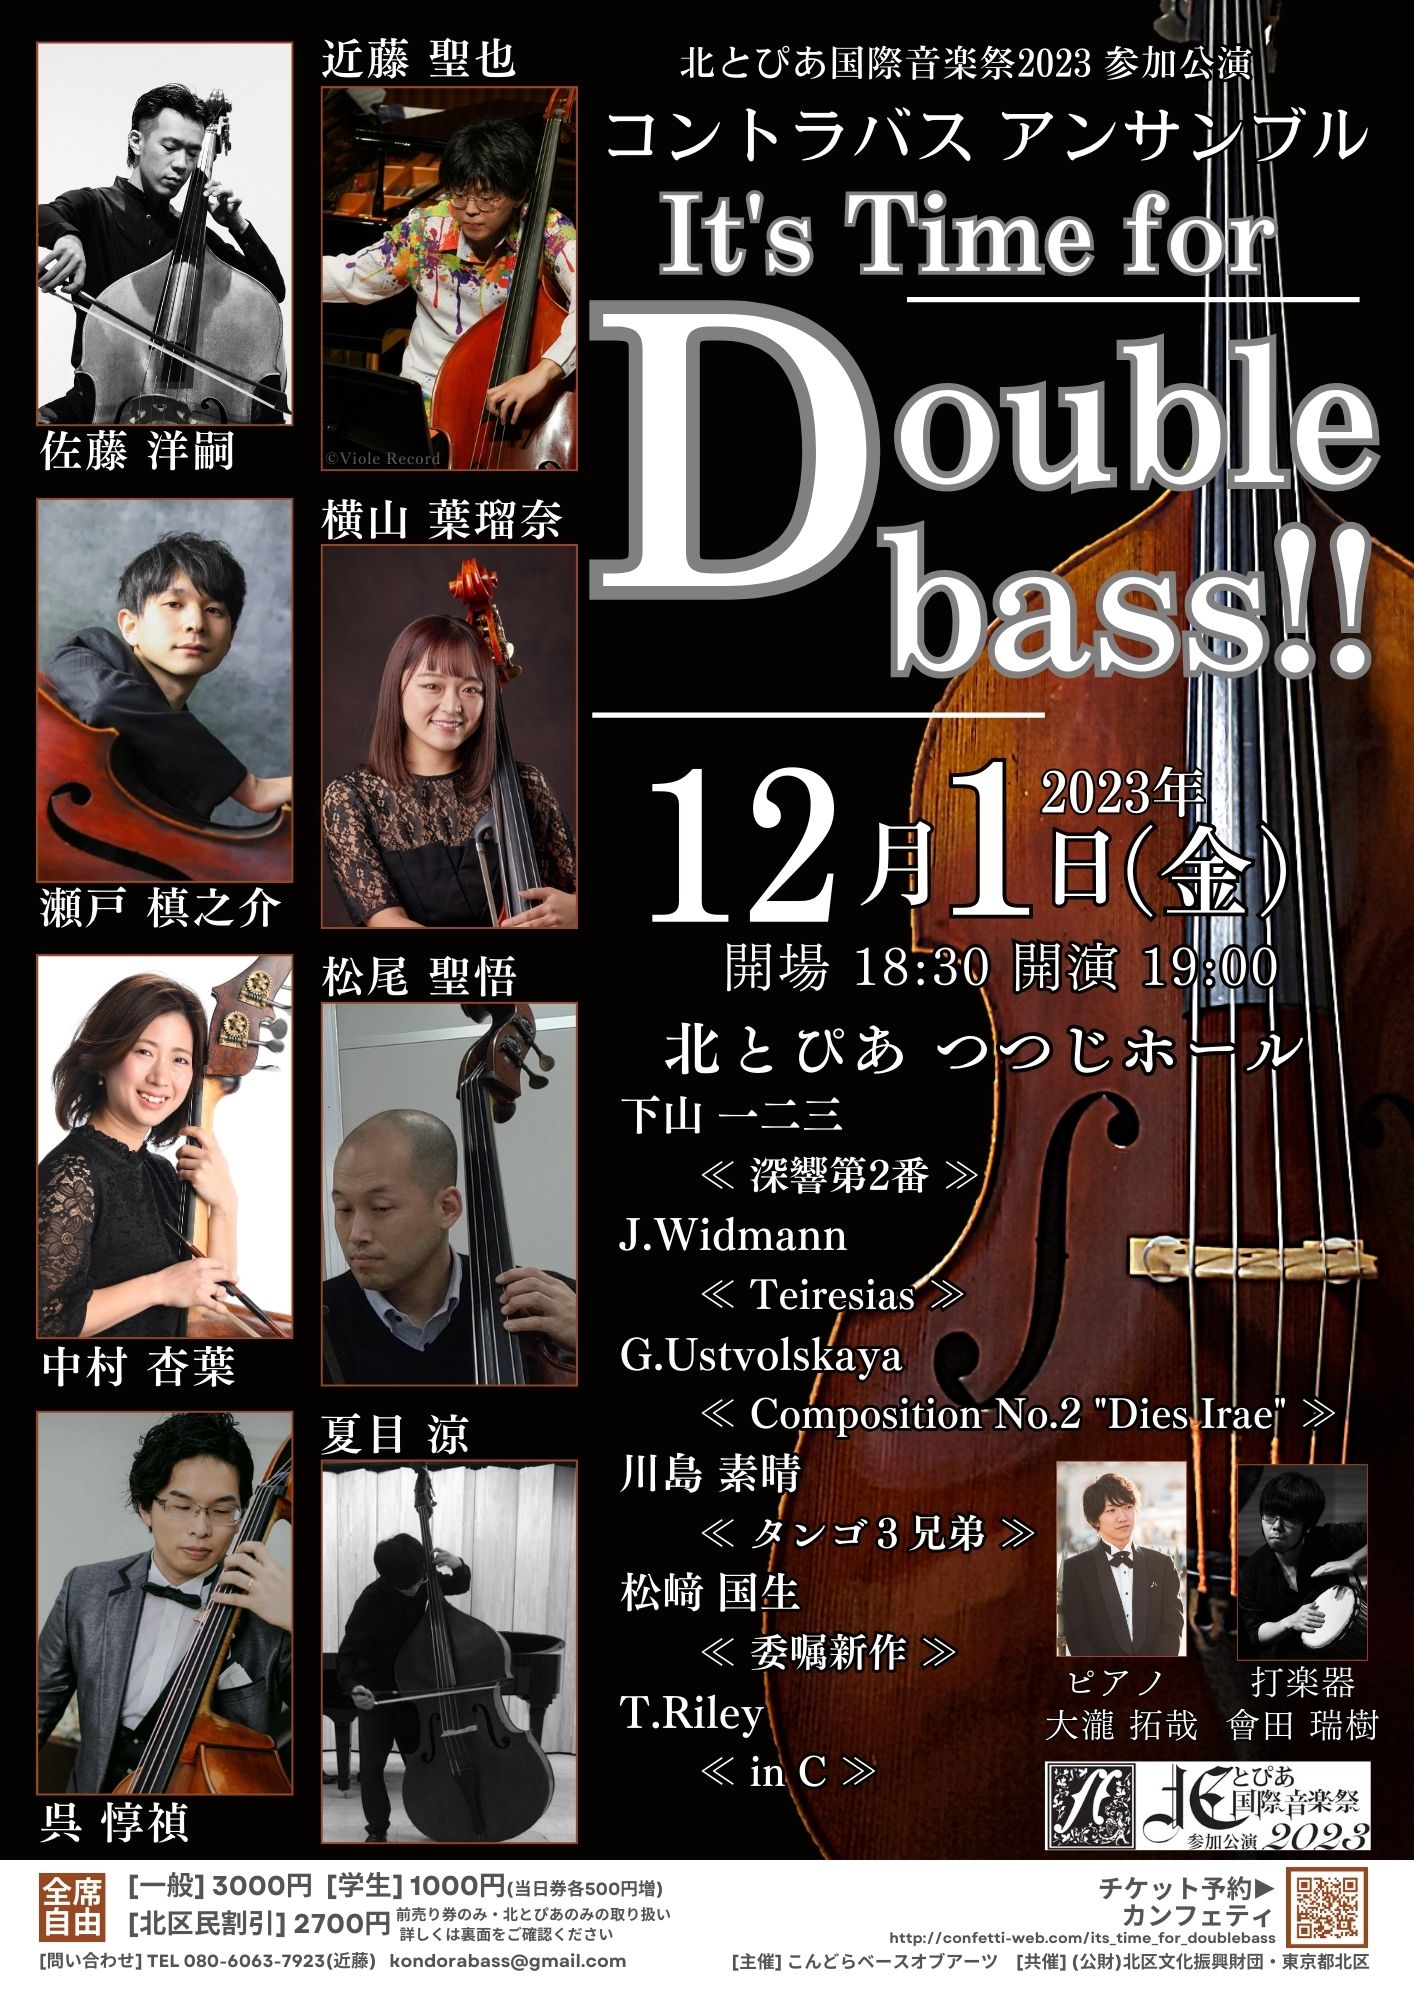 北とぴあ国際音楽祭2023参加公演<br>コントラバスアンサンブル<br>It's Time for Double bass!!<br />
